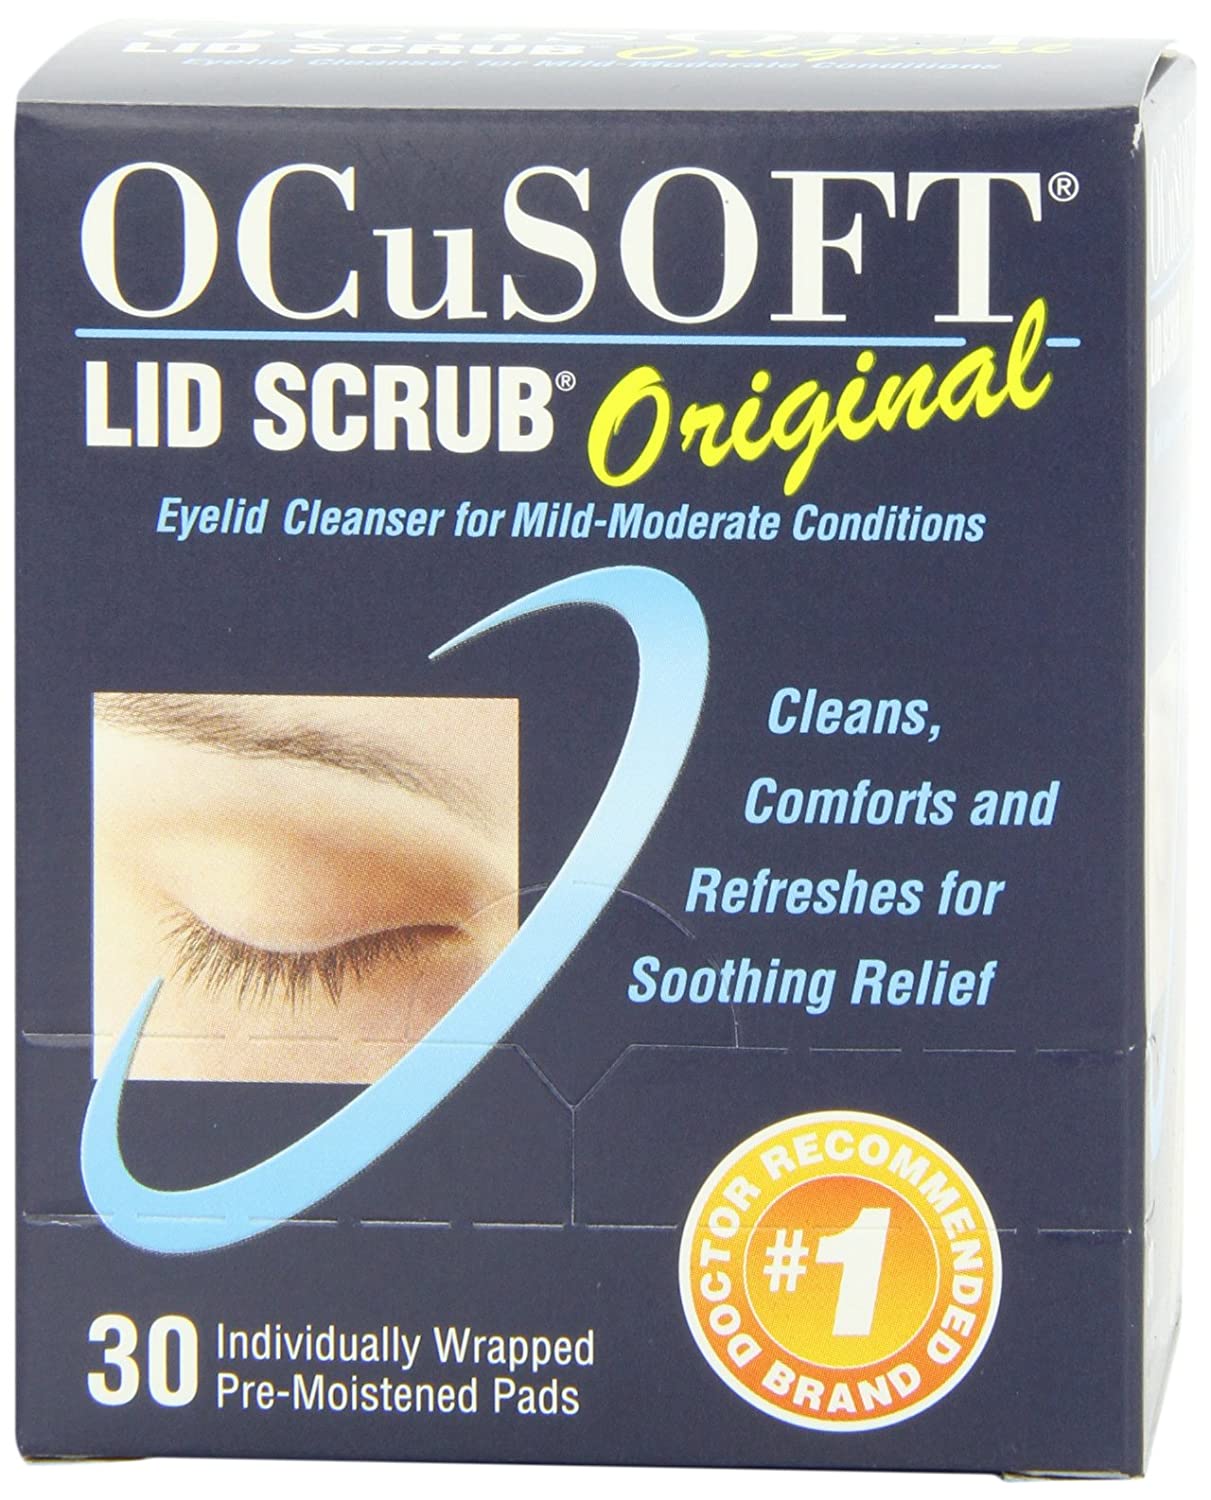 OCuSOFT Lid Scrub Original Pre-Moistened Pads 30 Count